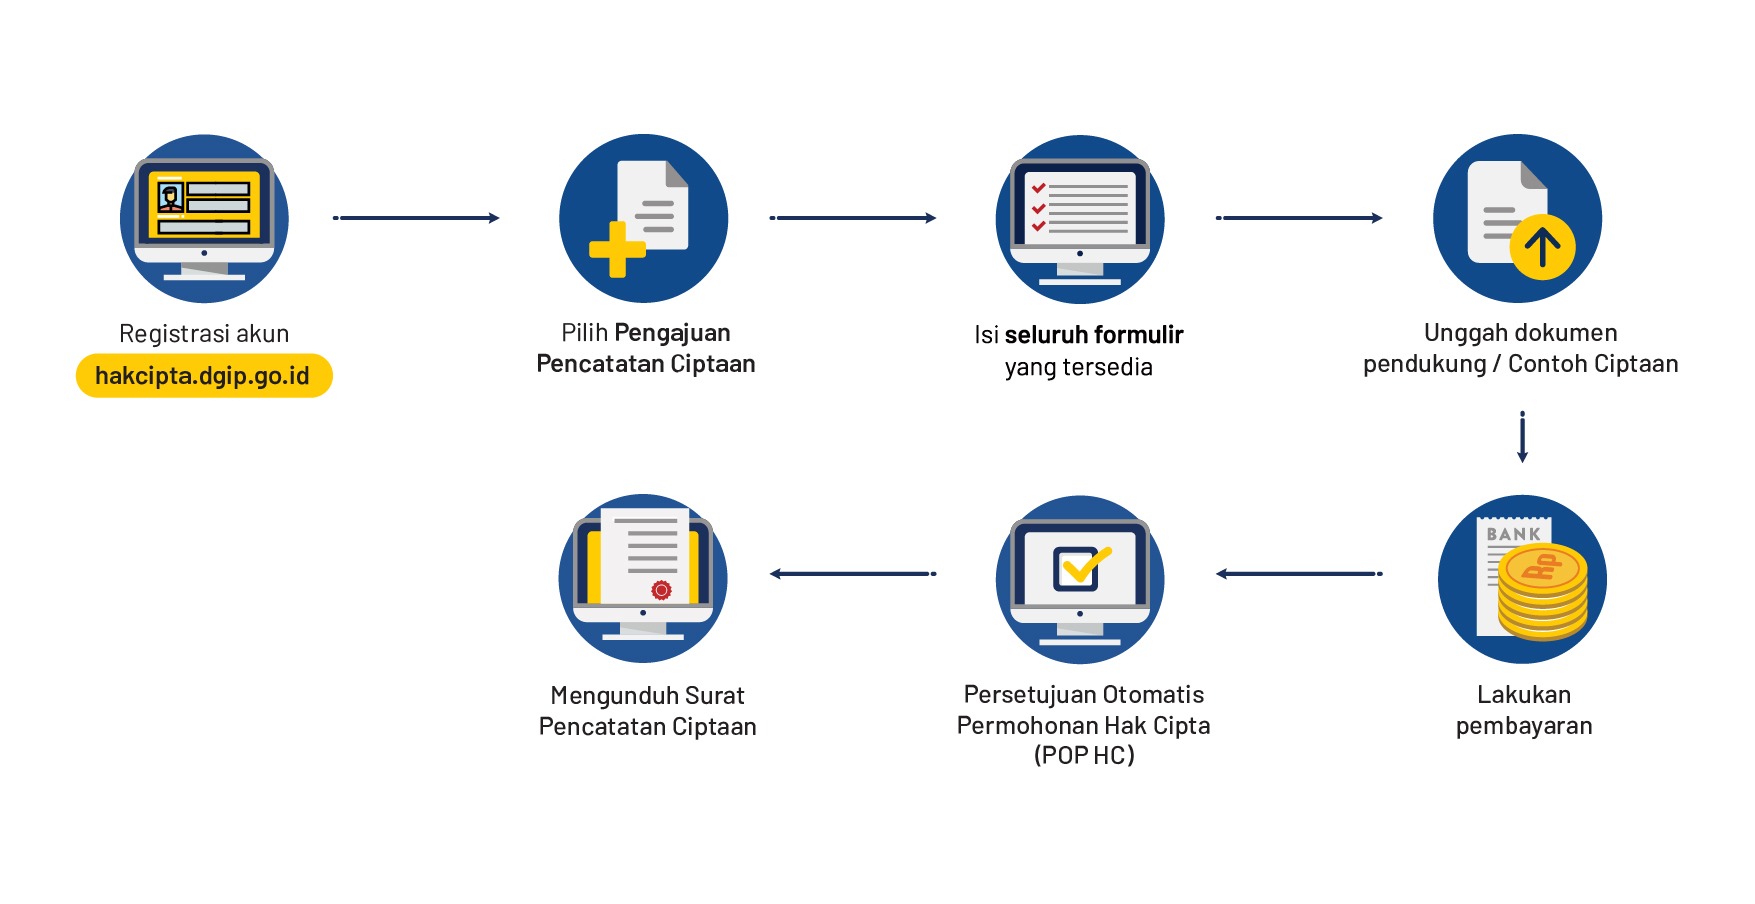 Gambar diargram alur pendaftaran hak cipta di Indonesia (Sumber: Direktorat Jenderal Kekayaan Intelektual (DKJI))